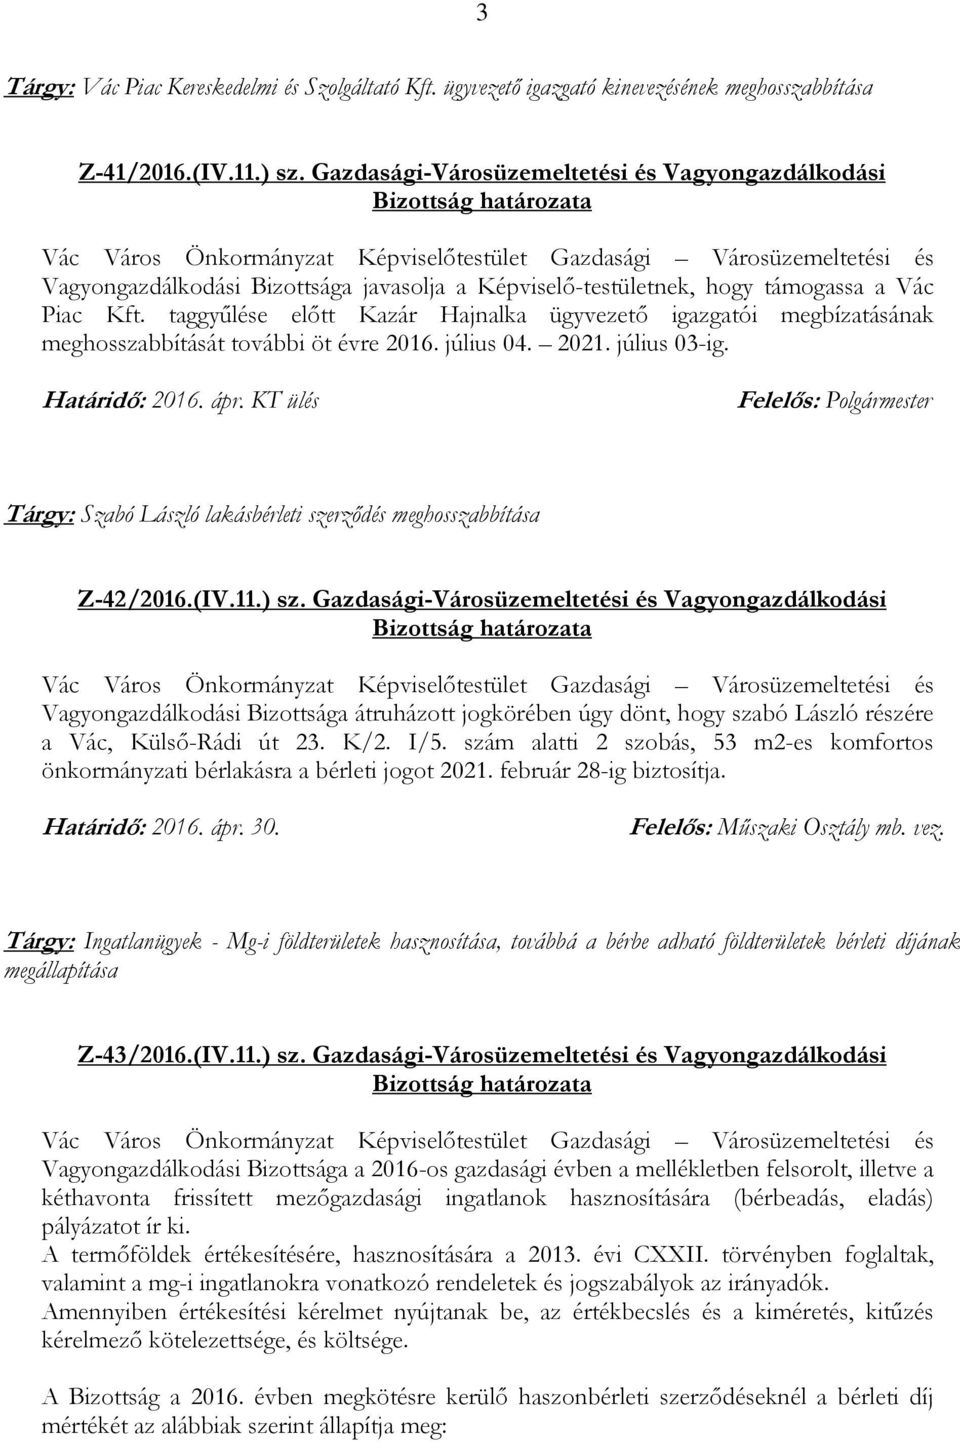 taggyűlése előtt Kazár Hajnalka ügyvezető igazgatói megbízatásának meghosszabbítását további öt évre 2016. július 04. 2021. július 03-ig.